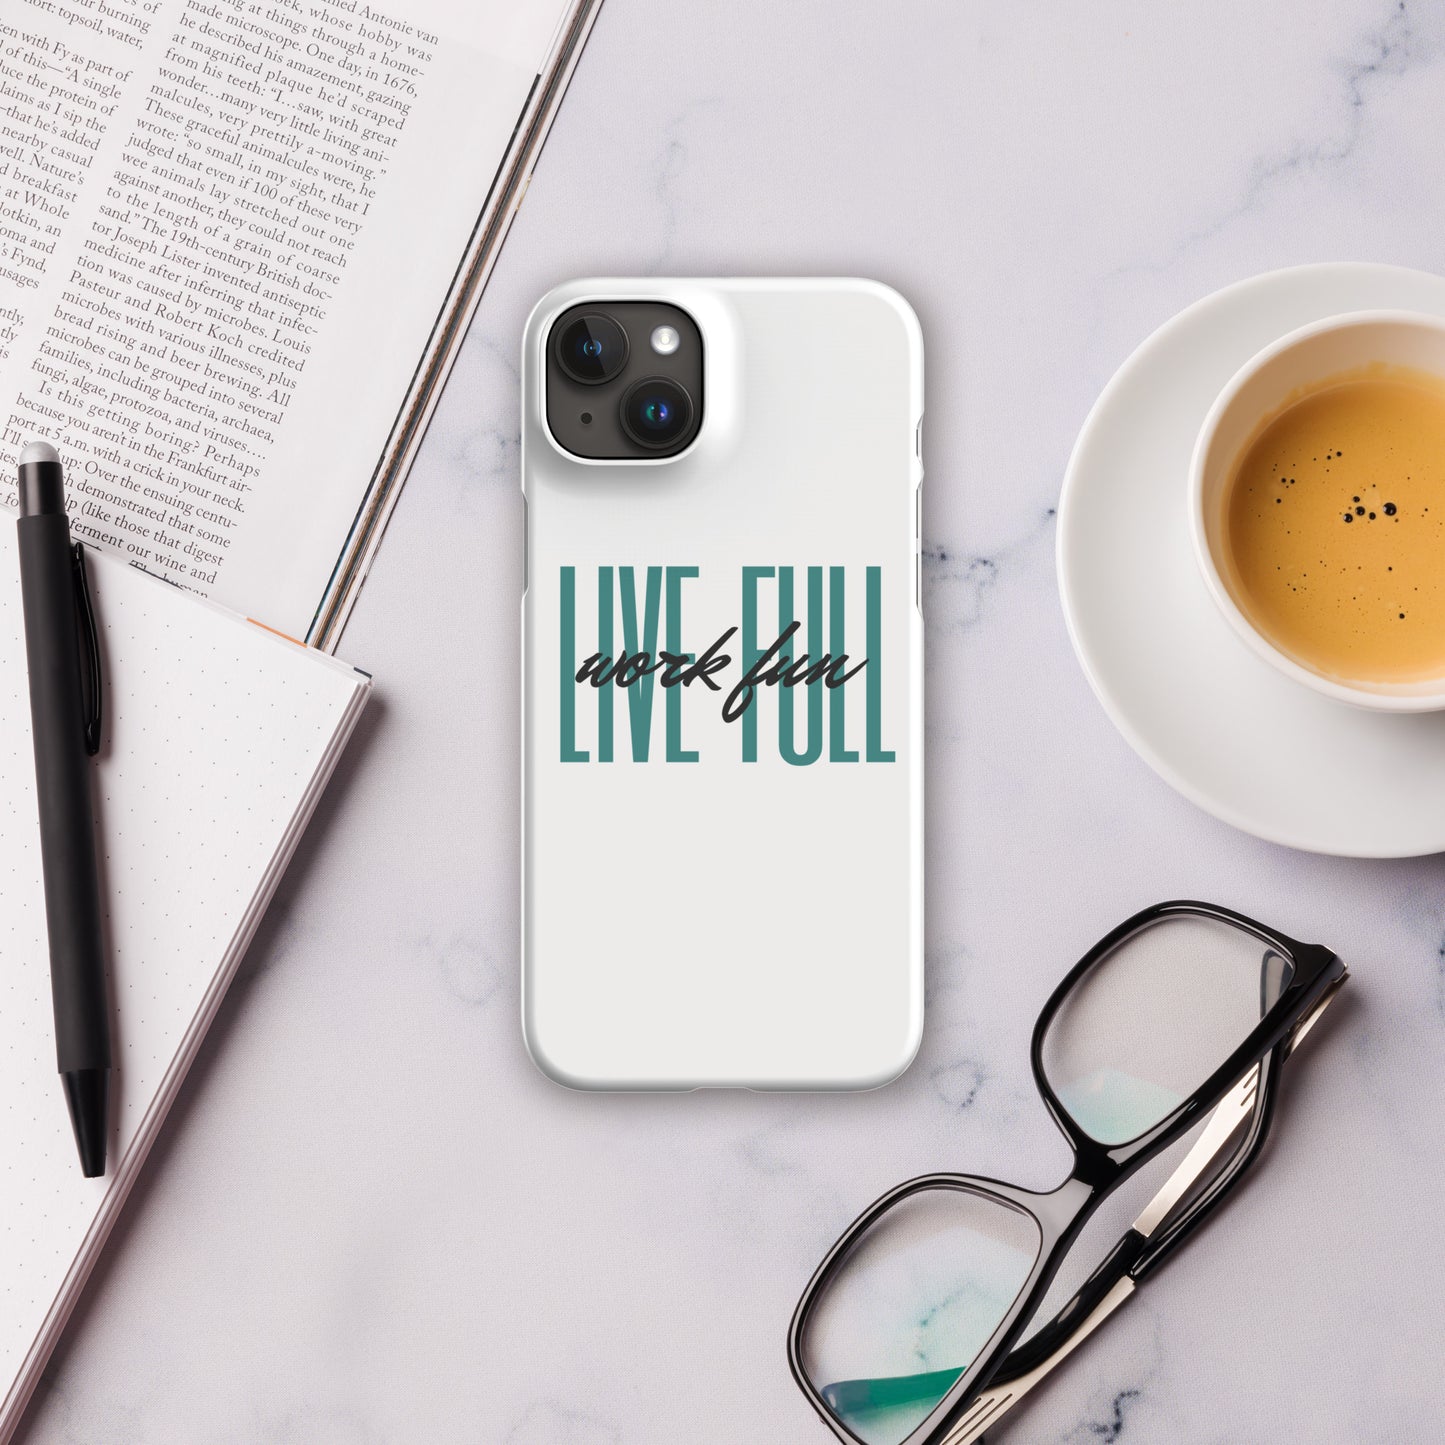 Live Full Work Fun iPhone® Case